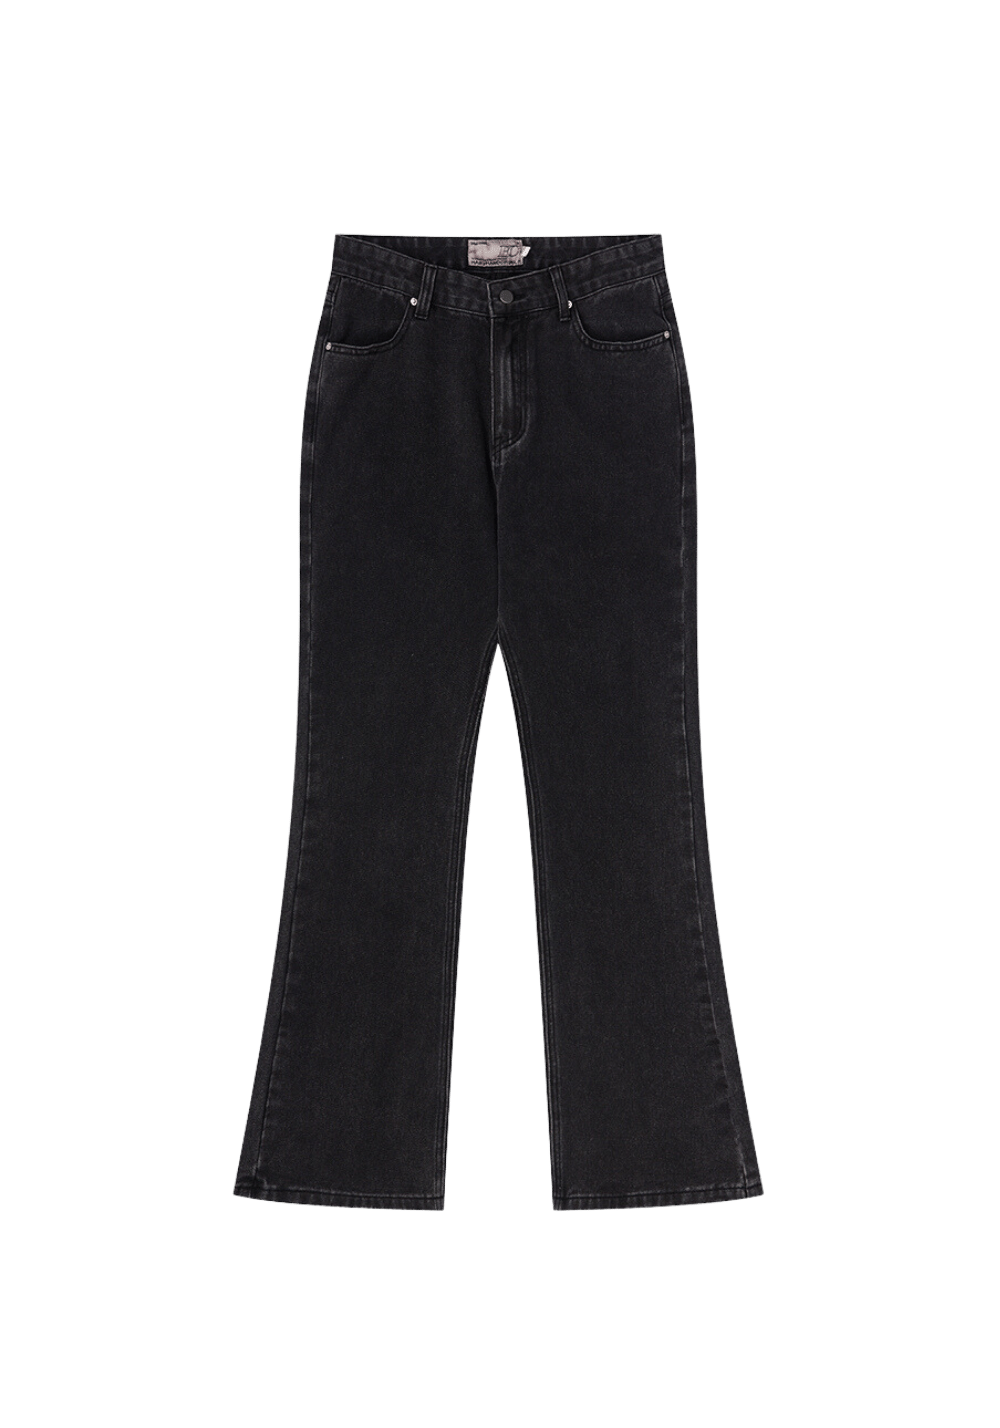 Oversized Heavy Wash Flared Jeans - PSYLOS 1, Oversized Heavy Wash Flared Jeans, Pants, HARSH AND CRUEL, PSYLOS 1